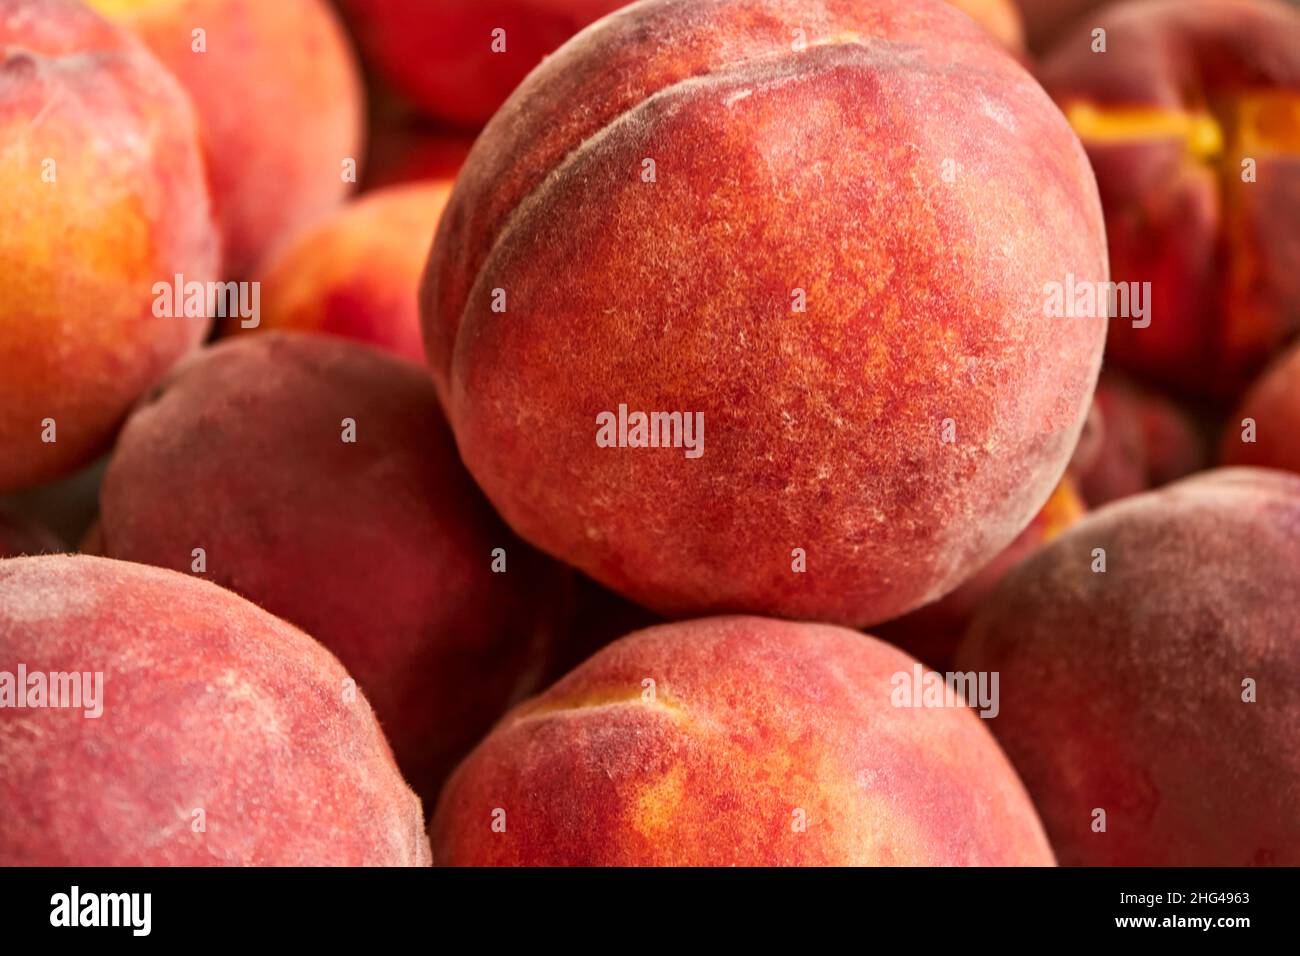 Ein perfekt reifer orangefarbener Pfirsich, der auf einem Haufen anderer Früchte liegt. Seitenansicht. Die sommerliche Obsternte ist ein guter Plan. Sommer horizontaler Hintergrund. Stockfoto